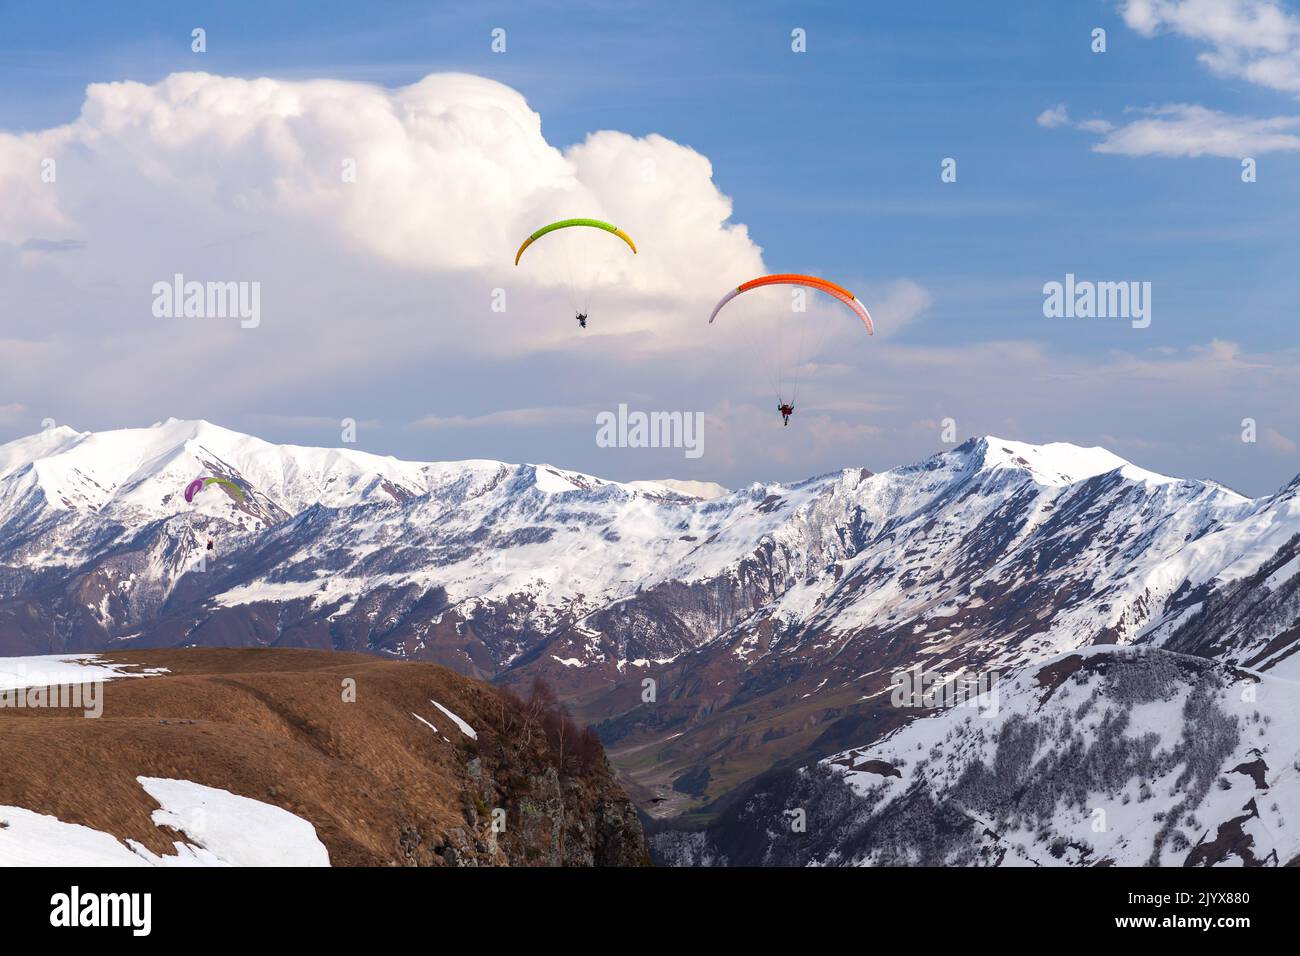 Berglandschaft mit Gleitschirmen, die tagsüber in der Nähe von verschneiten Gipfeln des Kaukasus fliegen. Gudauri, Georgia Stockfoto